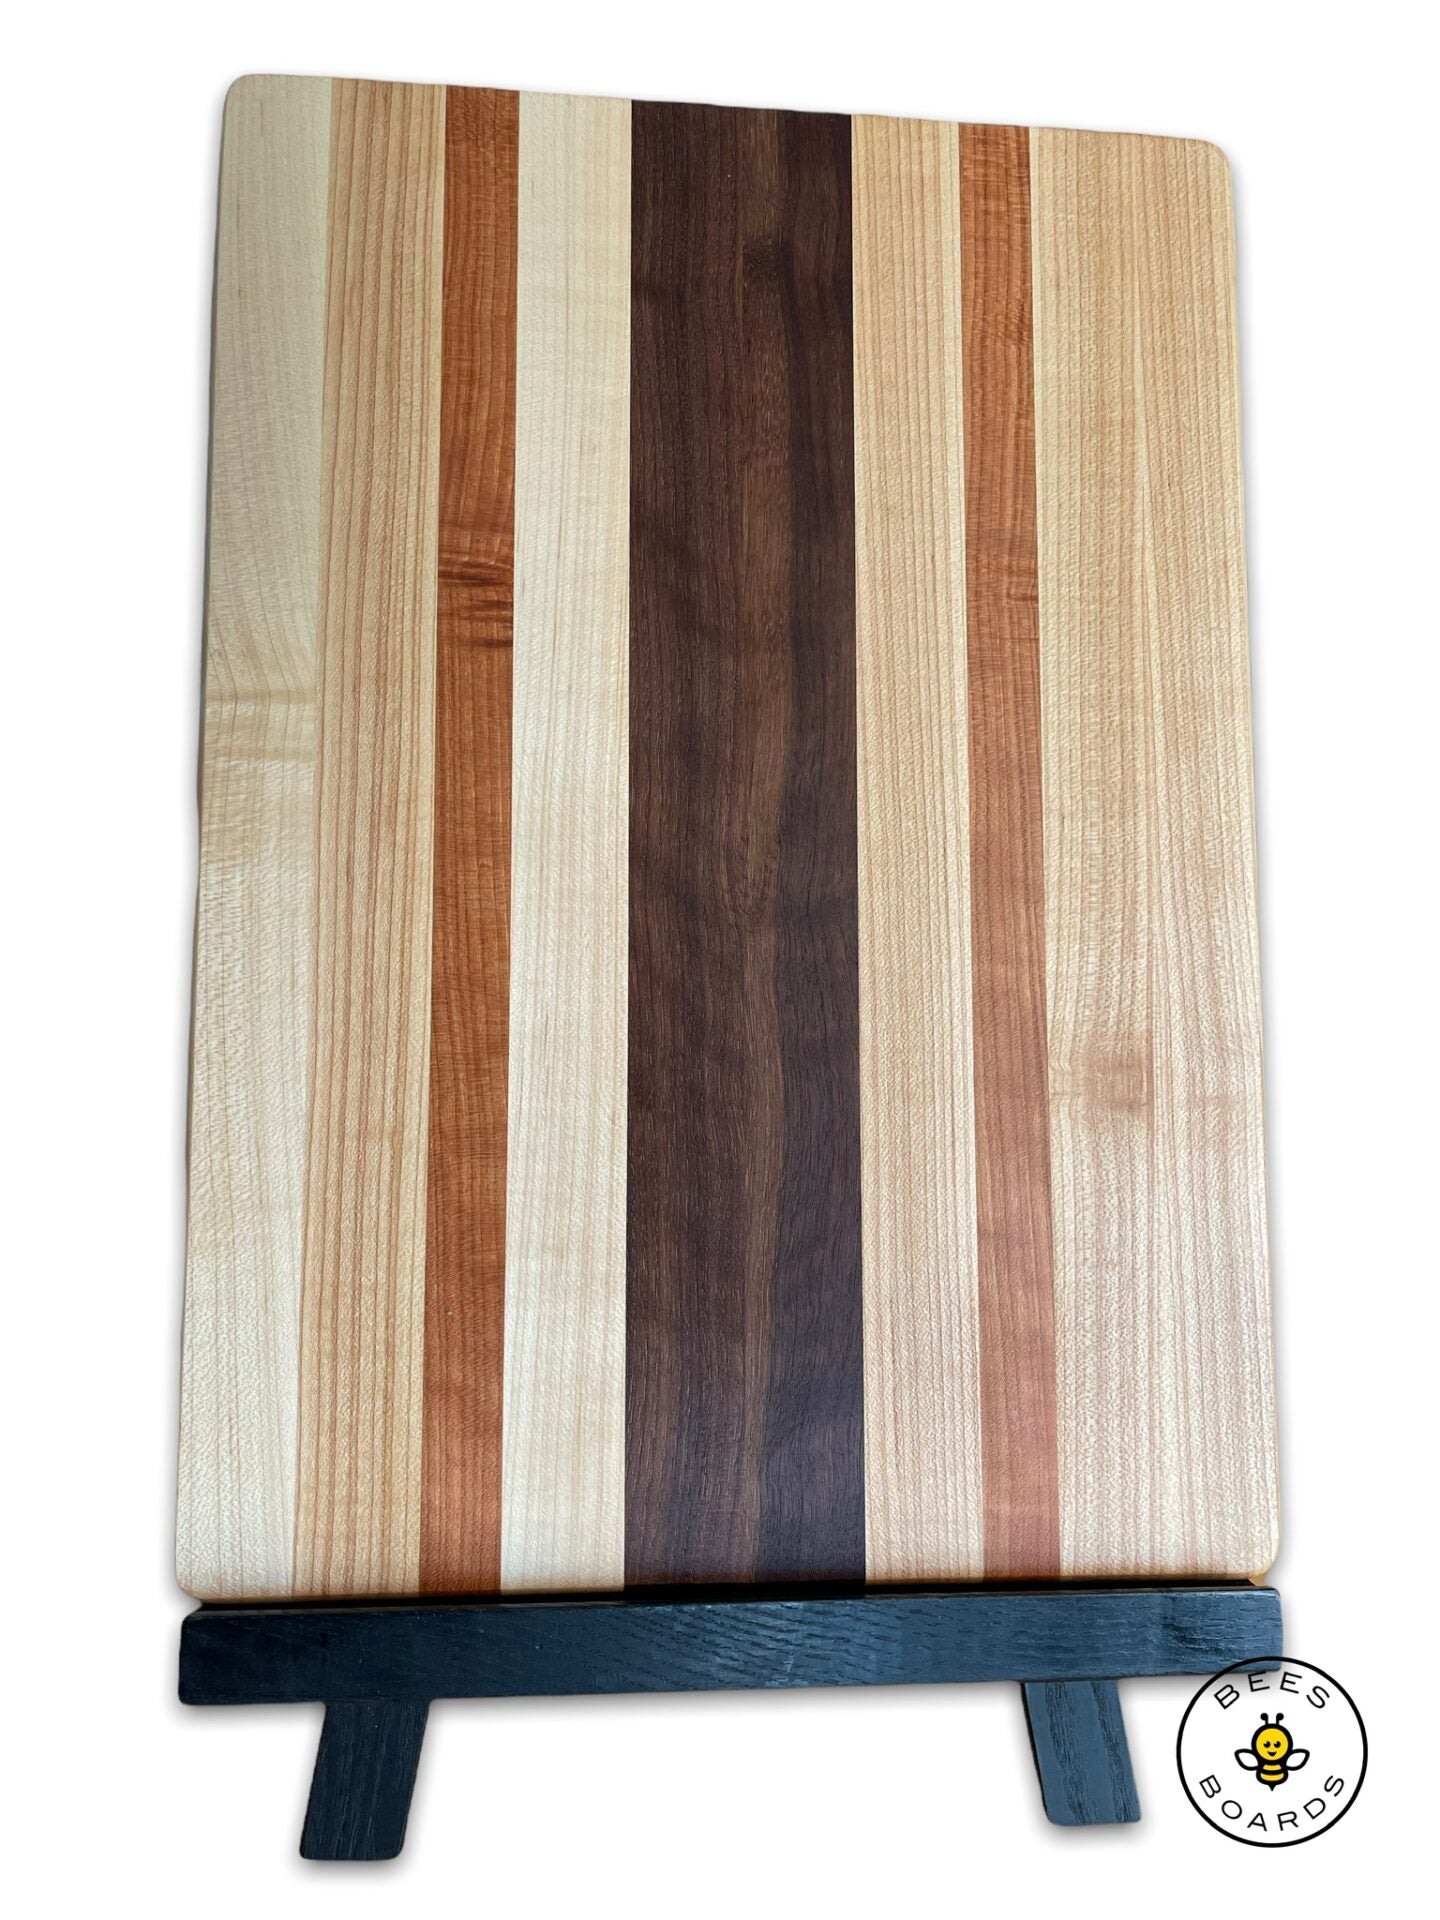 Custom "traditional" cutting board